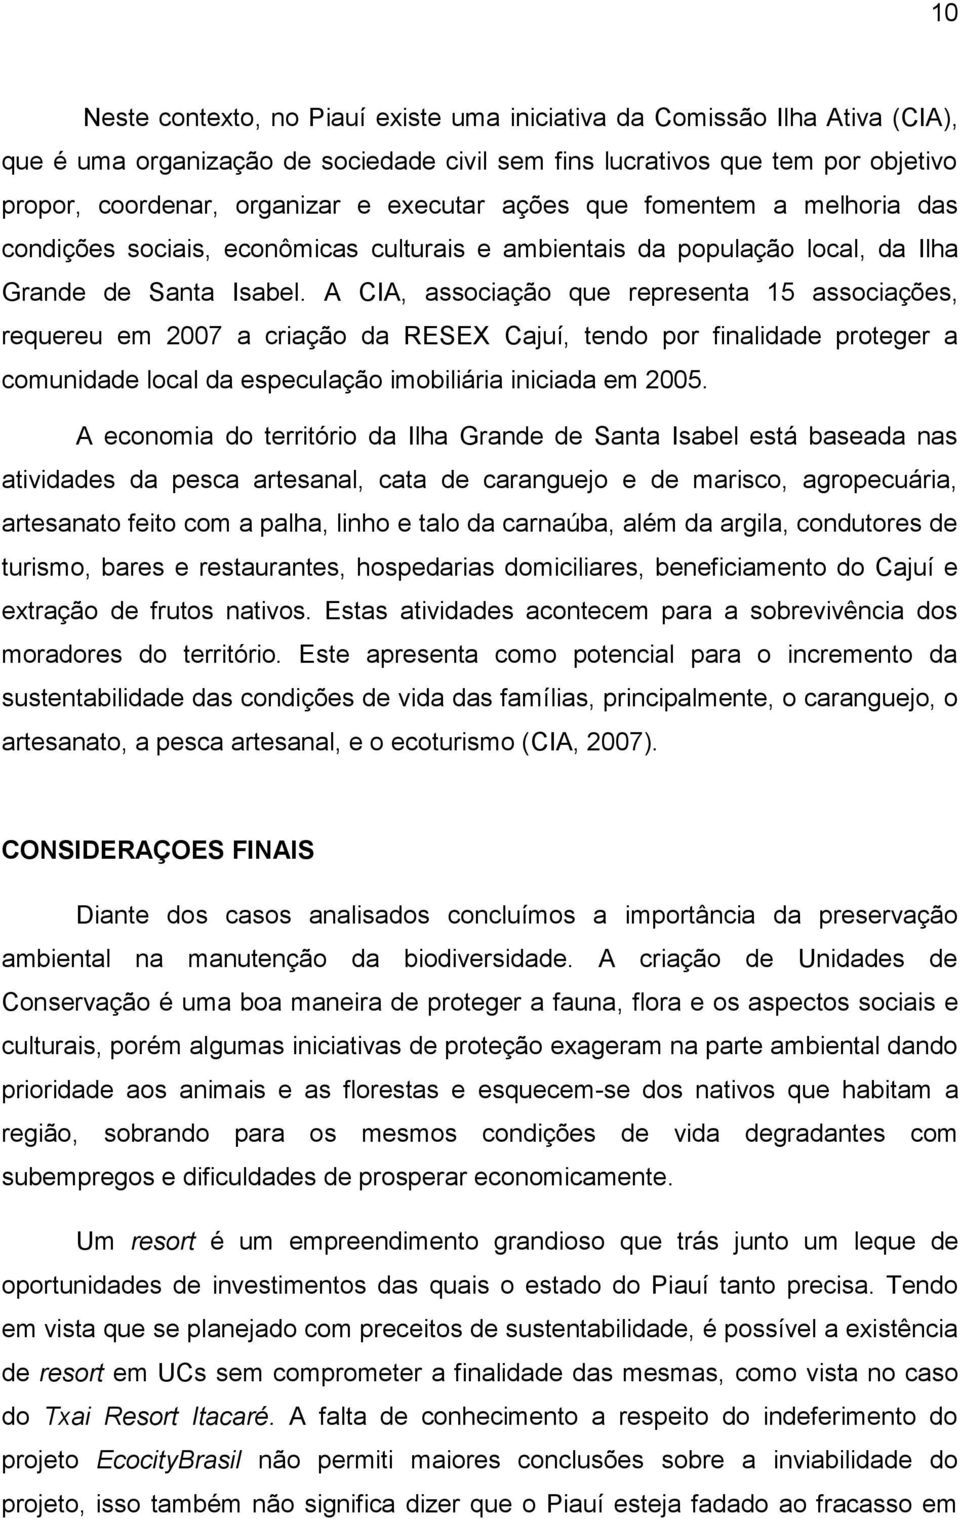 A CIA, associação que representa 15 associações, requereu em 2007 a criação da RESEX Cajuí, tendo por finalidade proteger a comunidade local da especulação imobiliária iniciada em 2005.